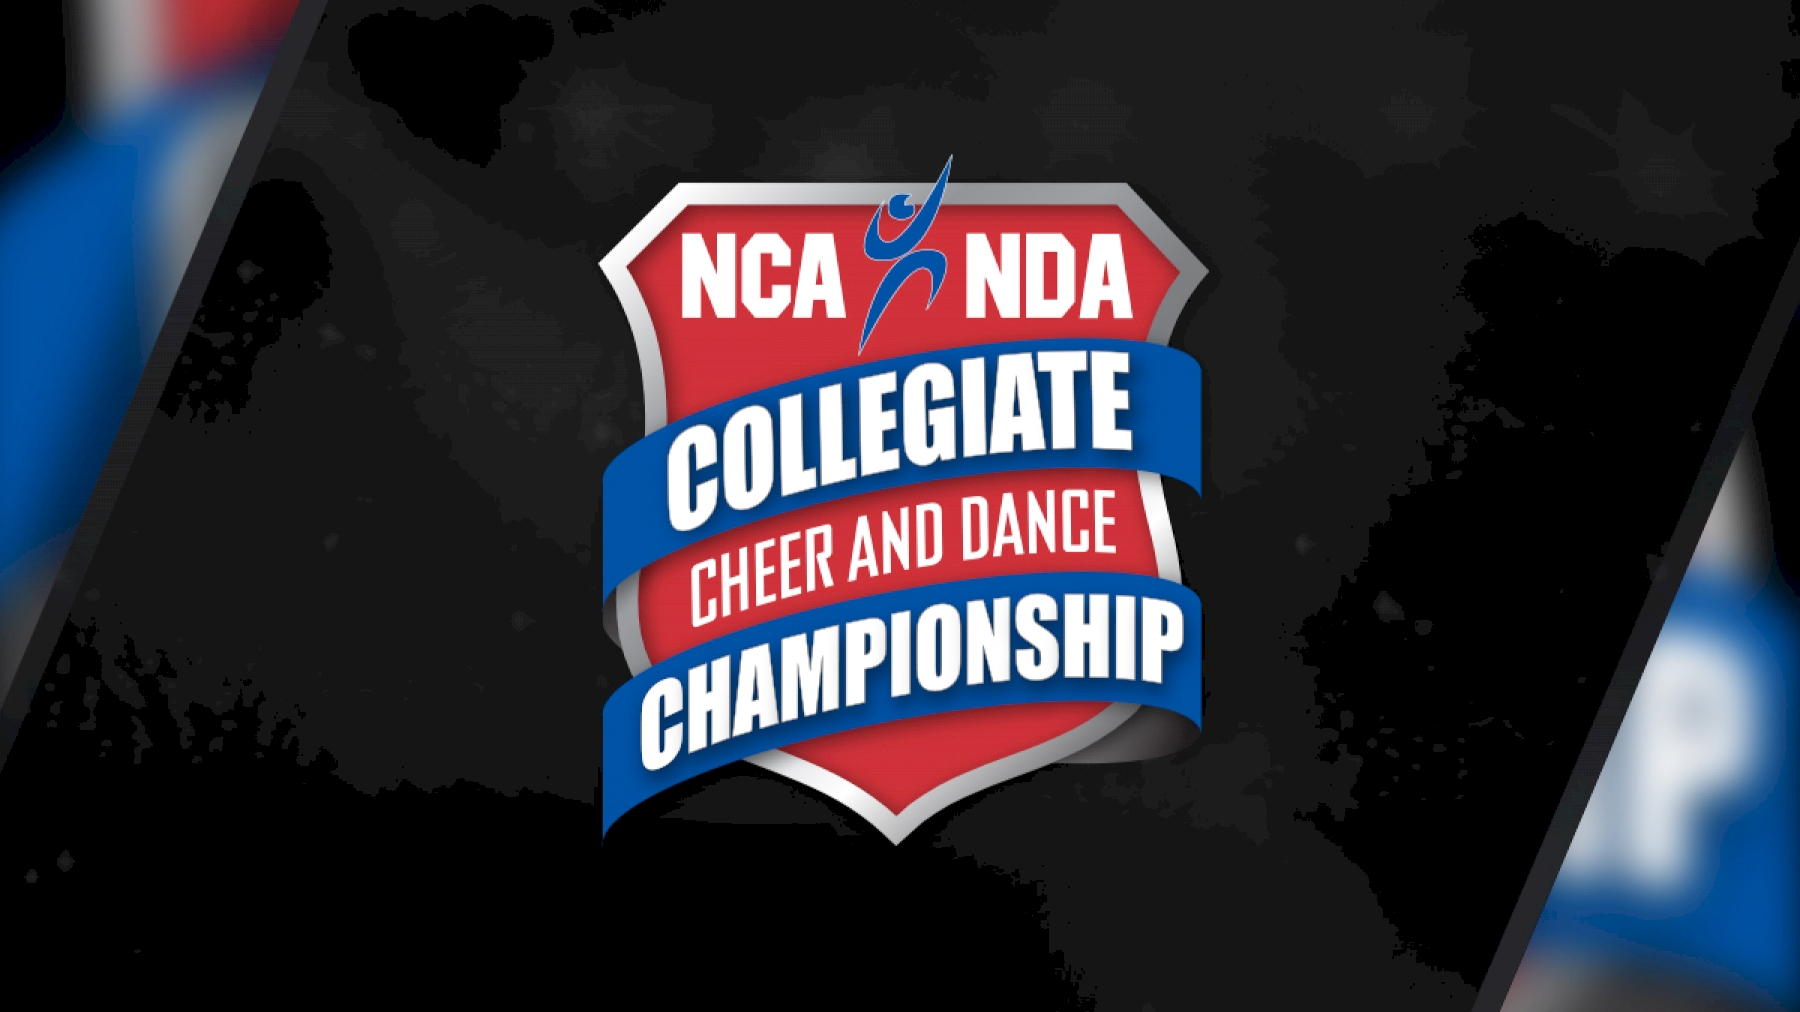 2019 NCA & NDA Collegiate Cheer and Dance Championship - Varsity TV